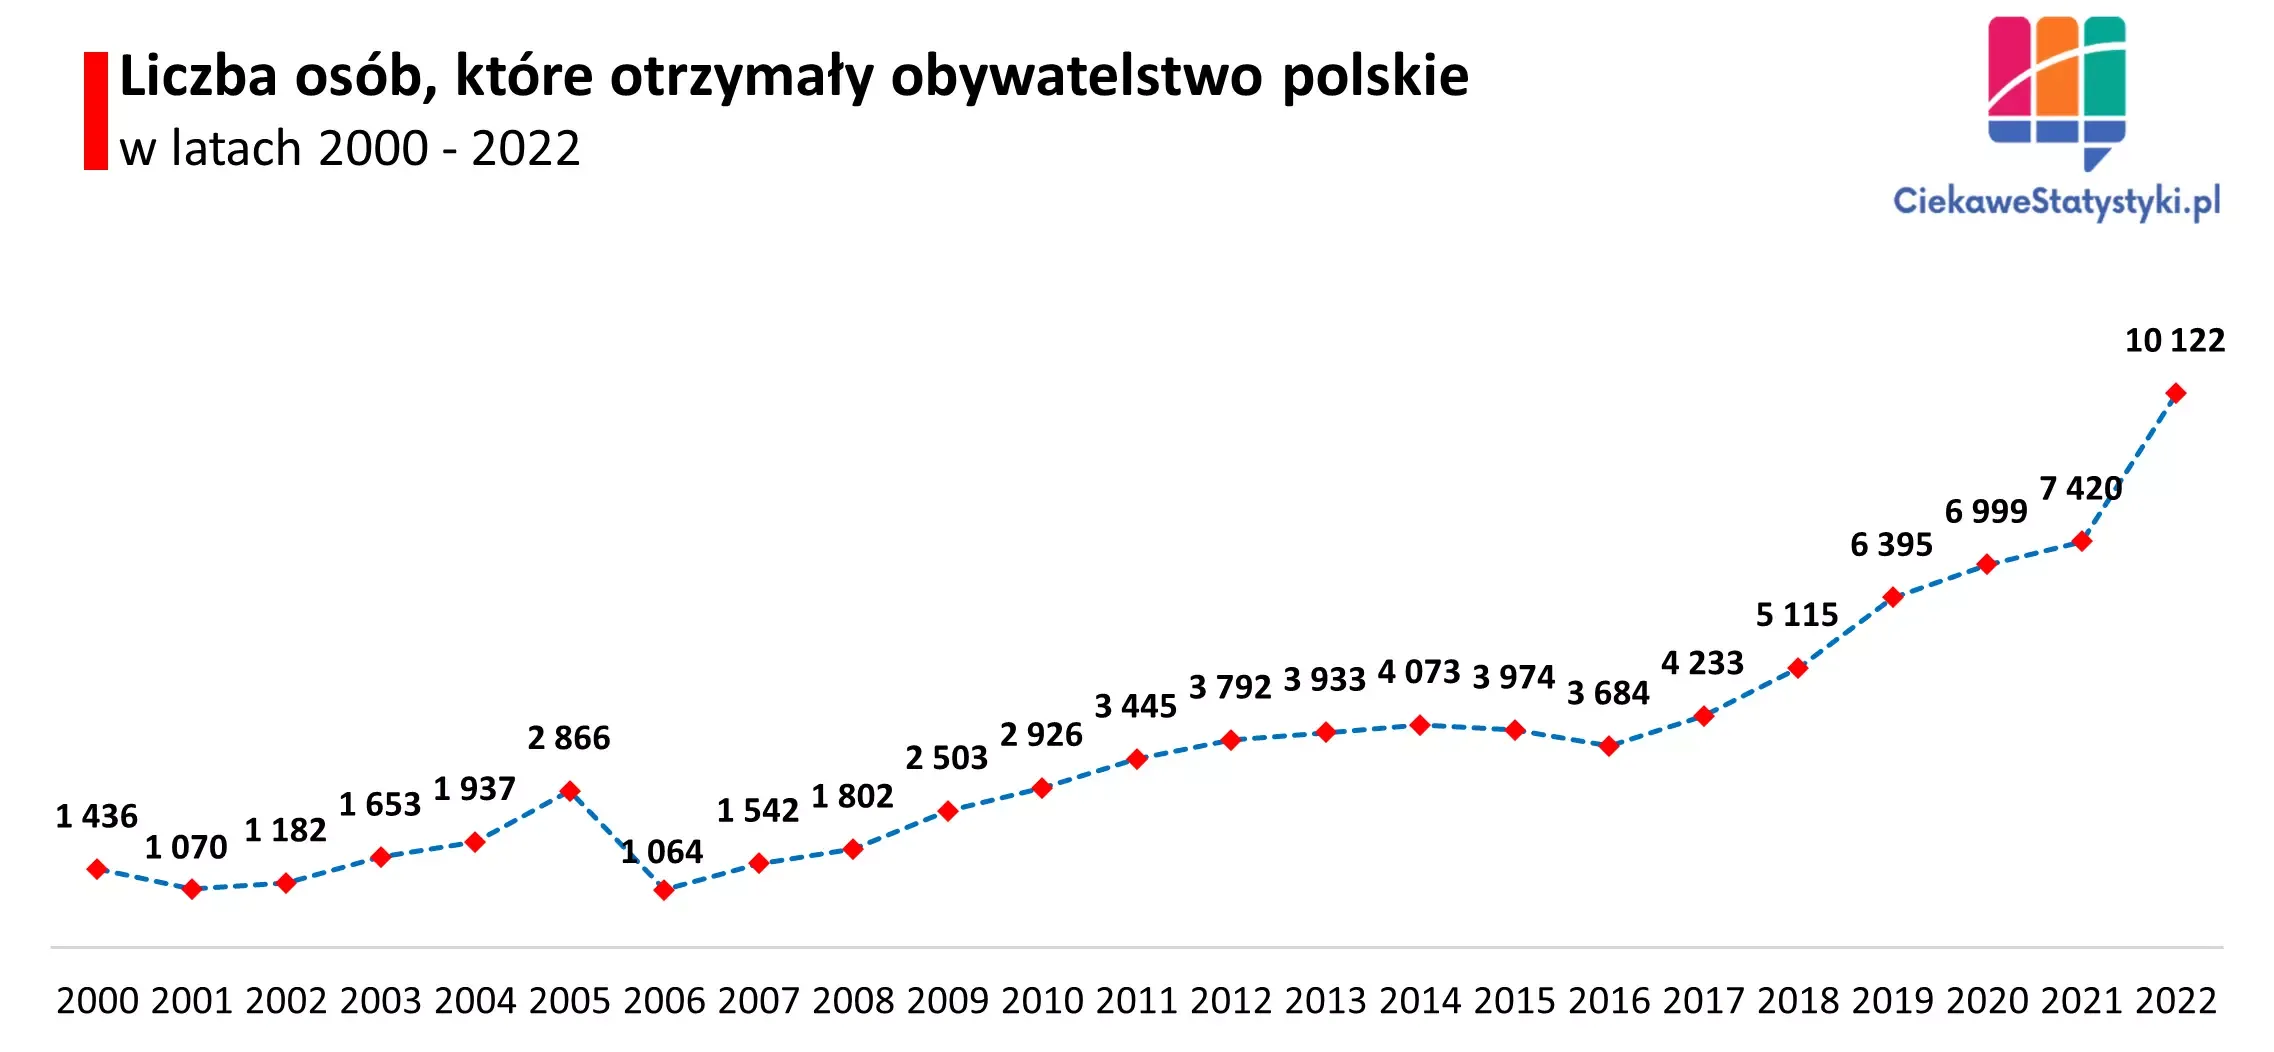 Wykres przedstawia ile osób otrzymało obywatelstwo polskie w poszczególnych latach